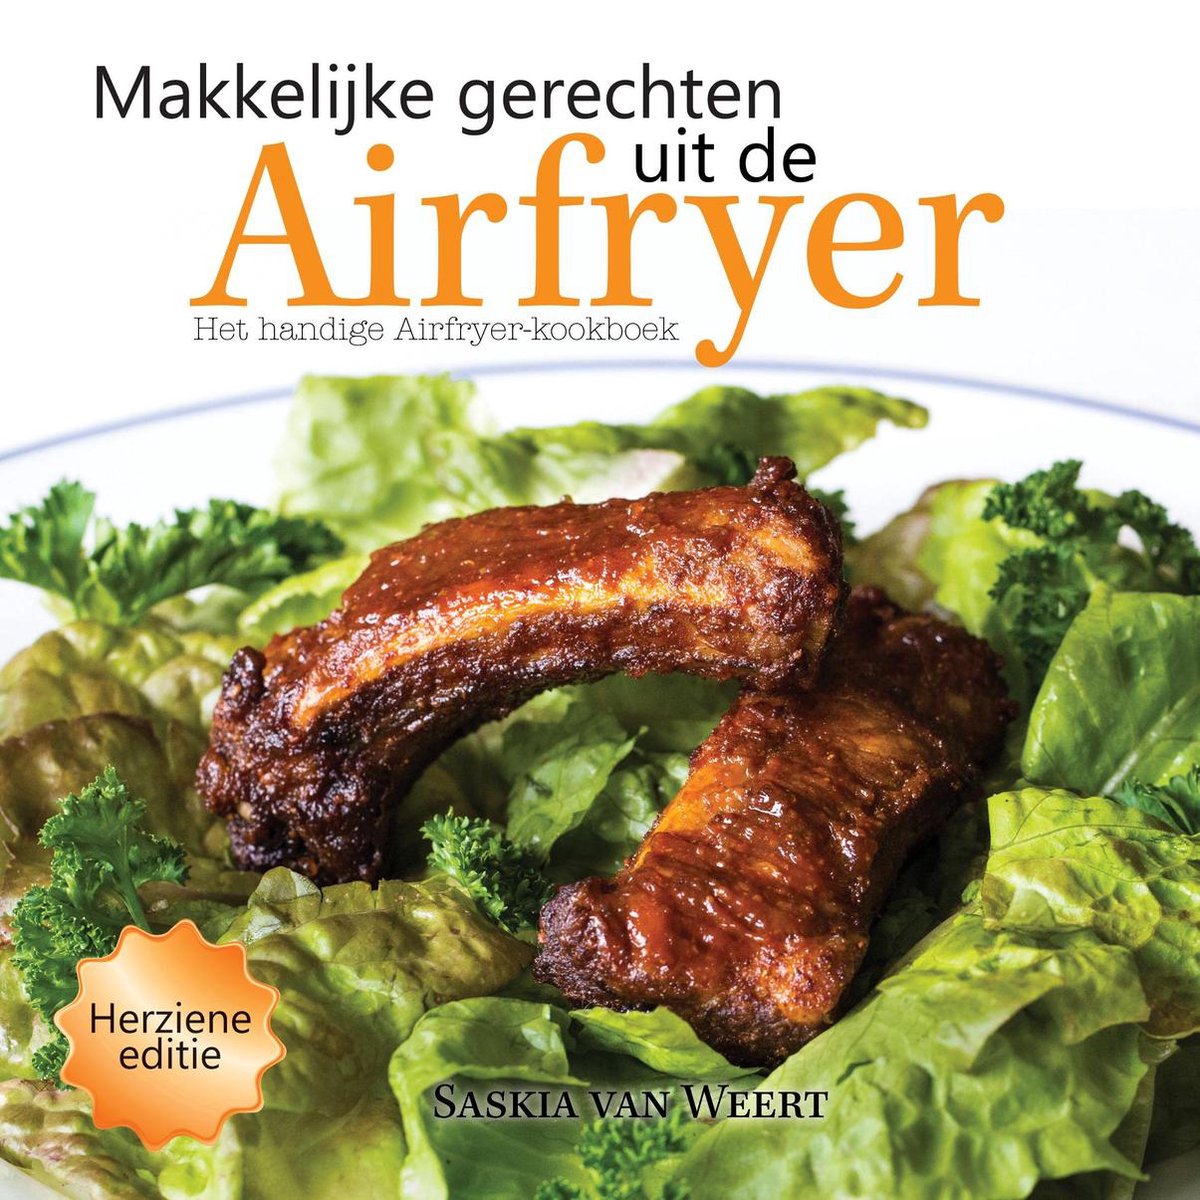 Thriller residentie Rijke man Makkelijke gerechten uit de Airfryer, Saskia van Weert | 9789402218893 |  Boeken | bol.com